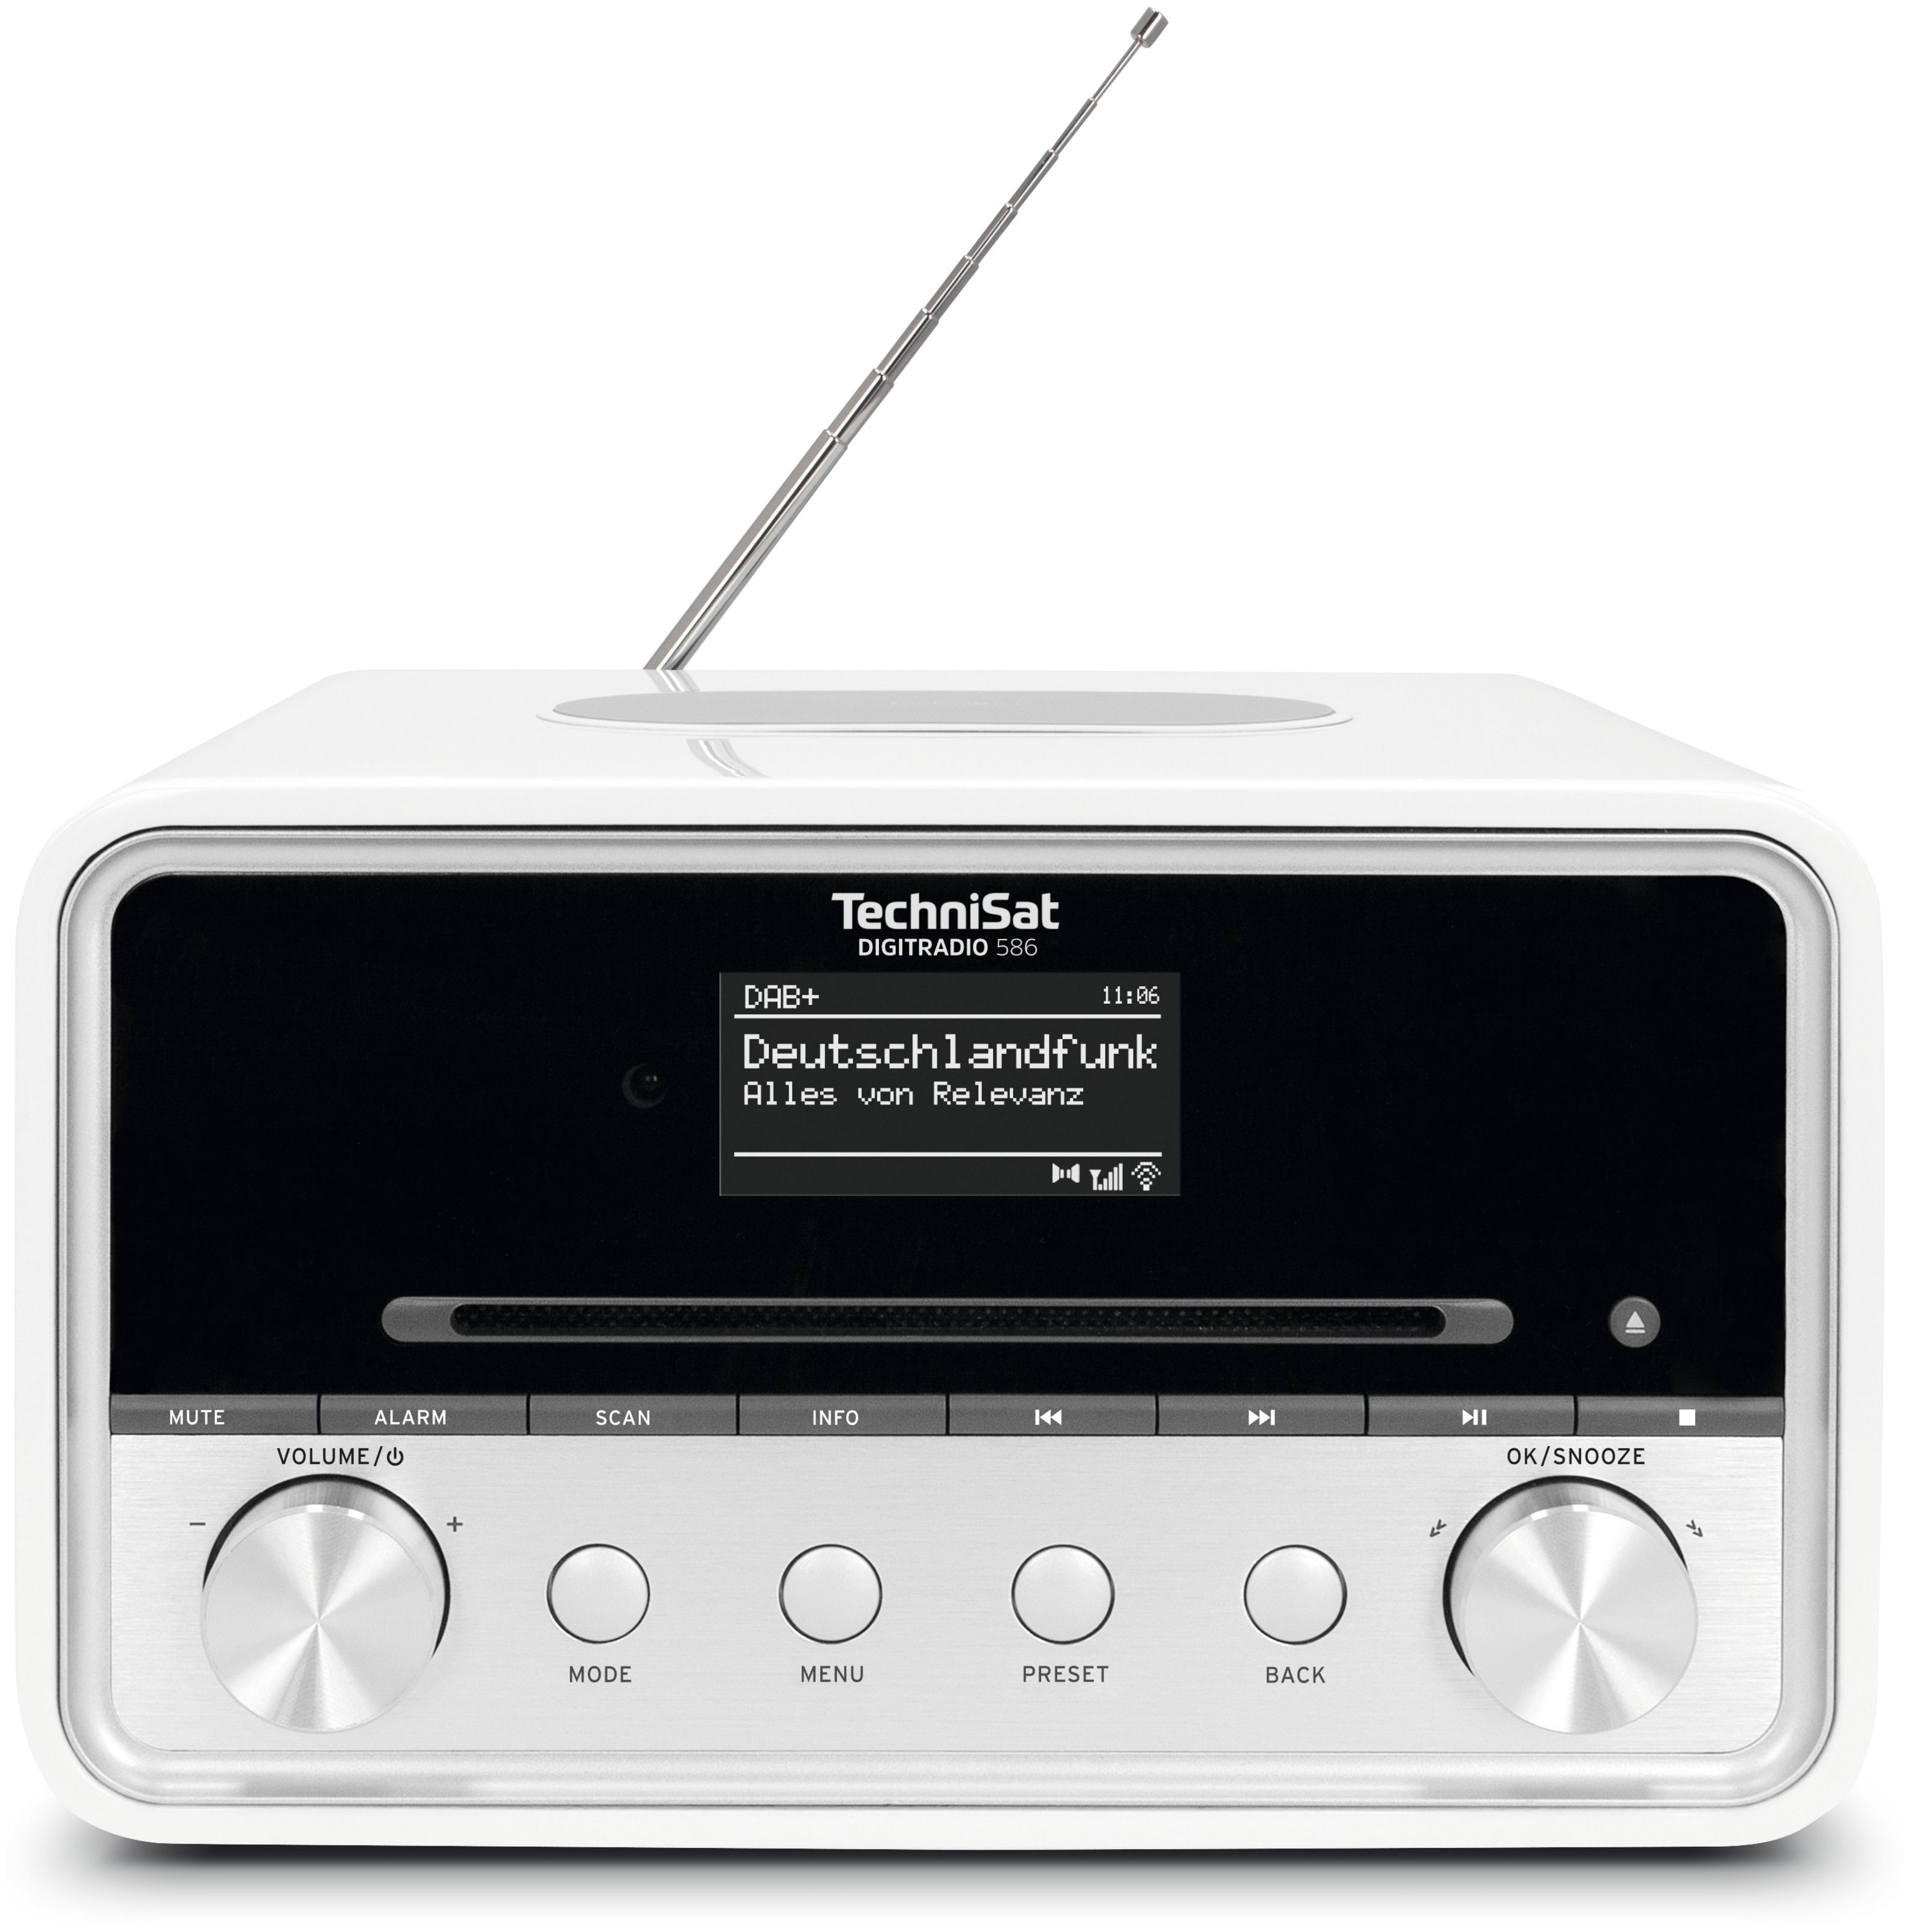 TechniSat Digitradio 586 Technomarkt (Weiß) DAB+, von Bluetooth FM expert Persönlich Radio